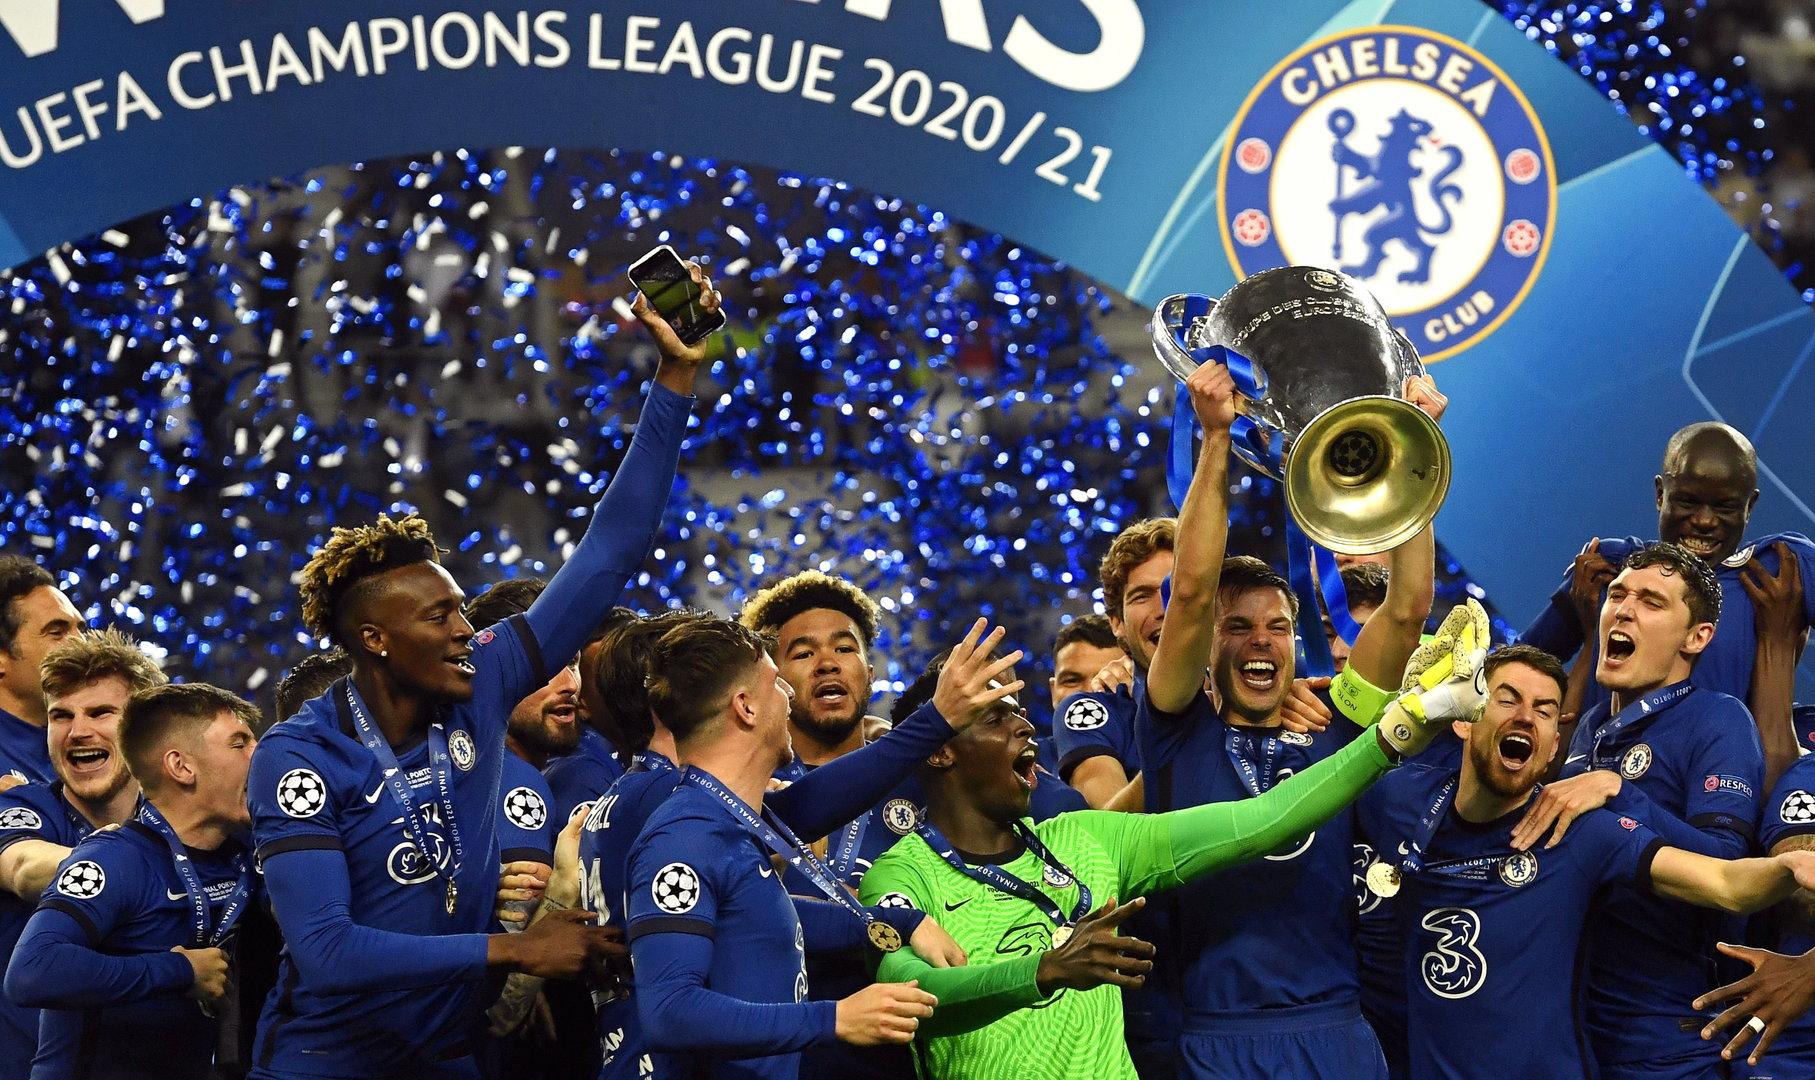 Final-Sieg gegen ManCity: Chelsea gewinnt die Champions League